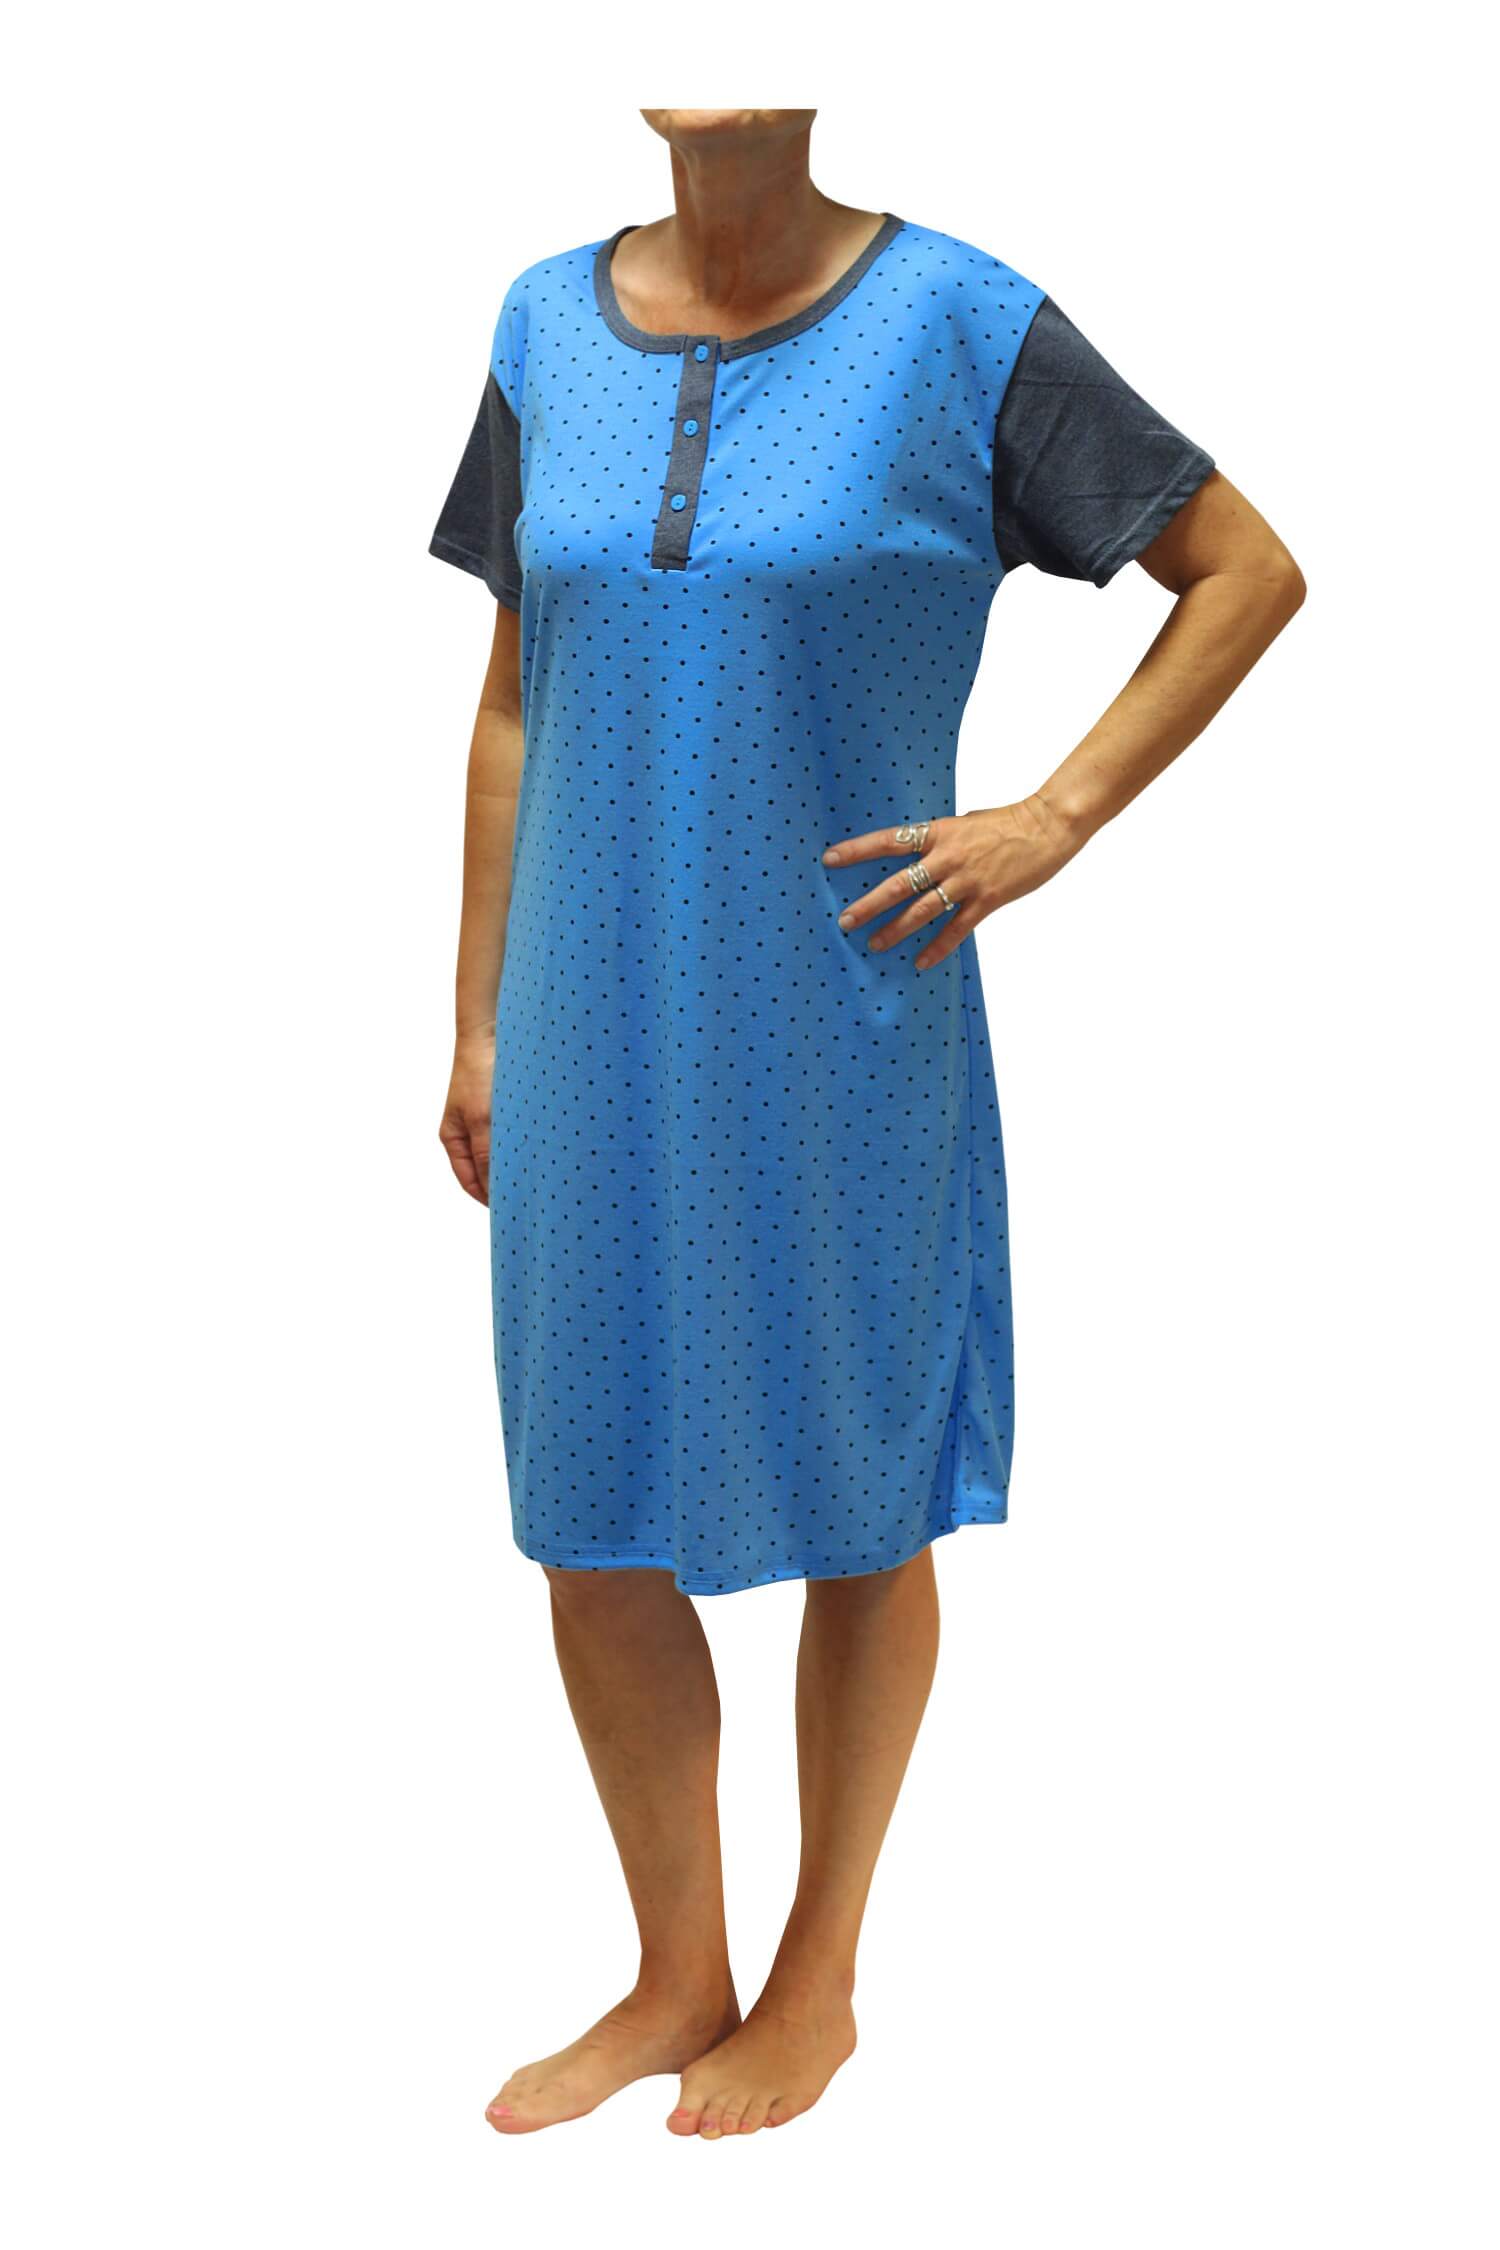 Adéla dámská noční košile s puntíky DNU329-NT XXL modrá